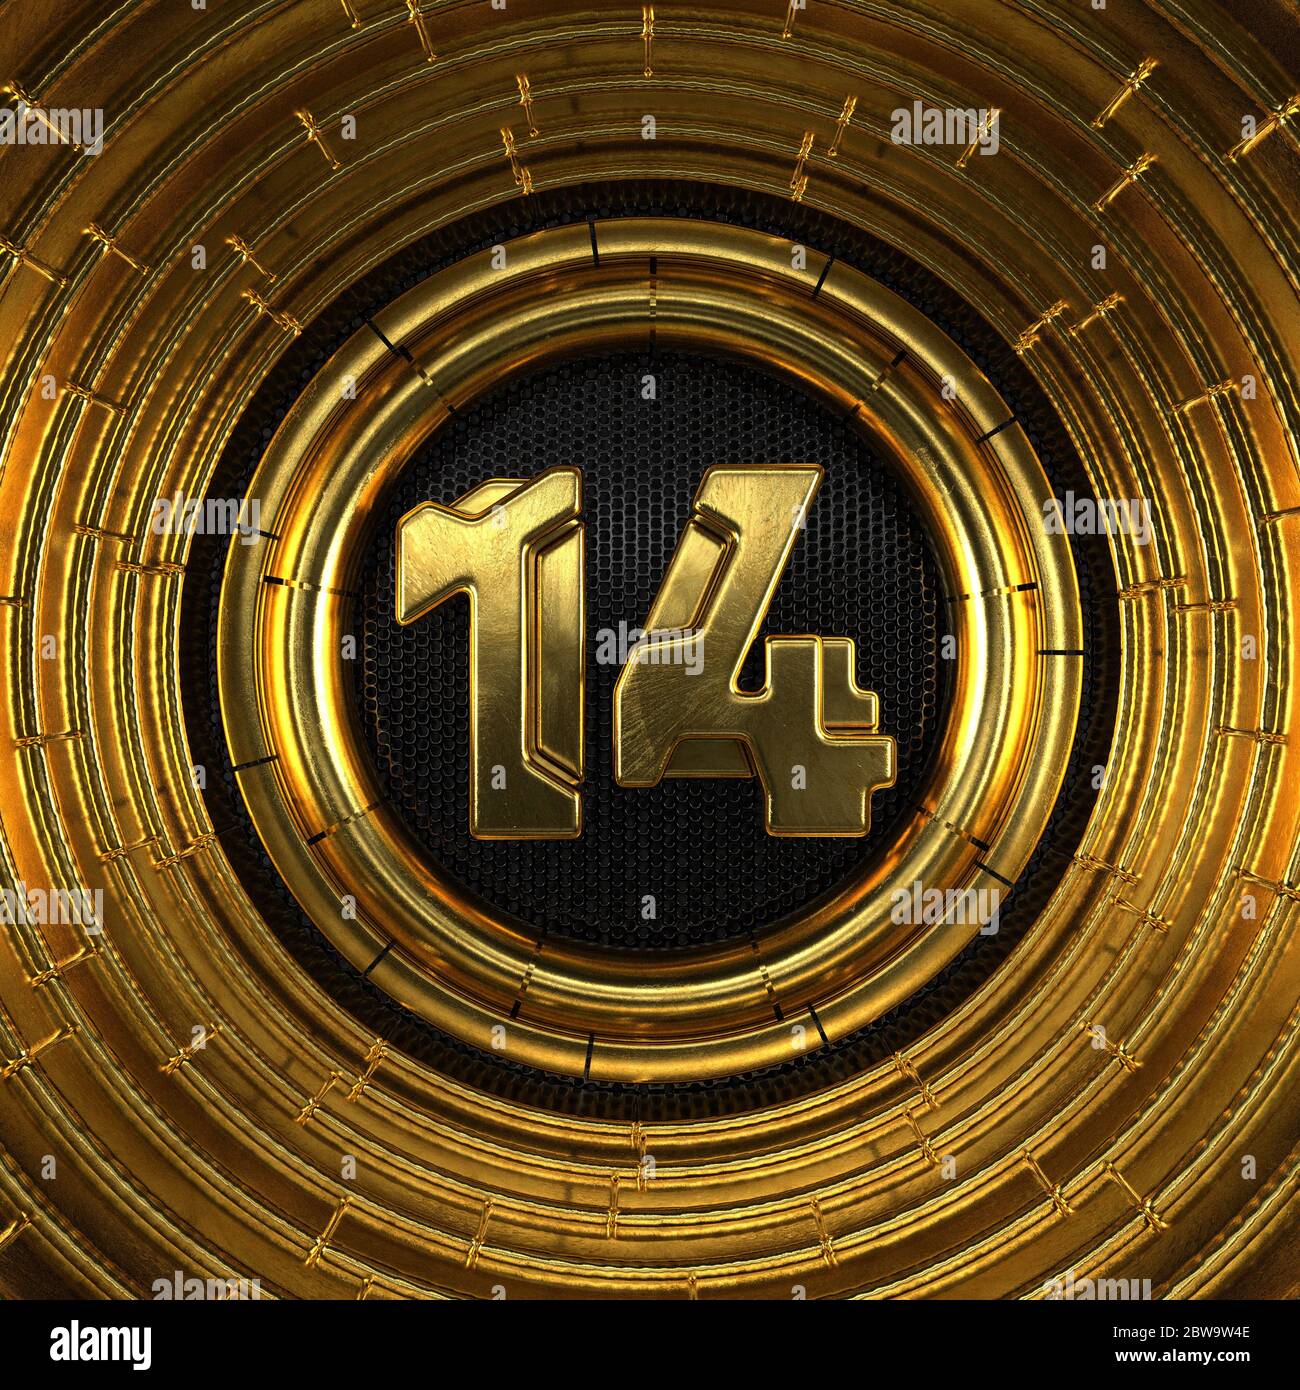 Numéro d'or 14 (numéro quatorze) avec fond en métal noir perforé et anneaux dorés. Illustration 3D Banque D'Images